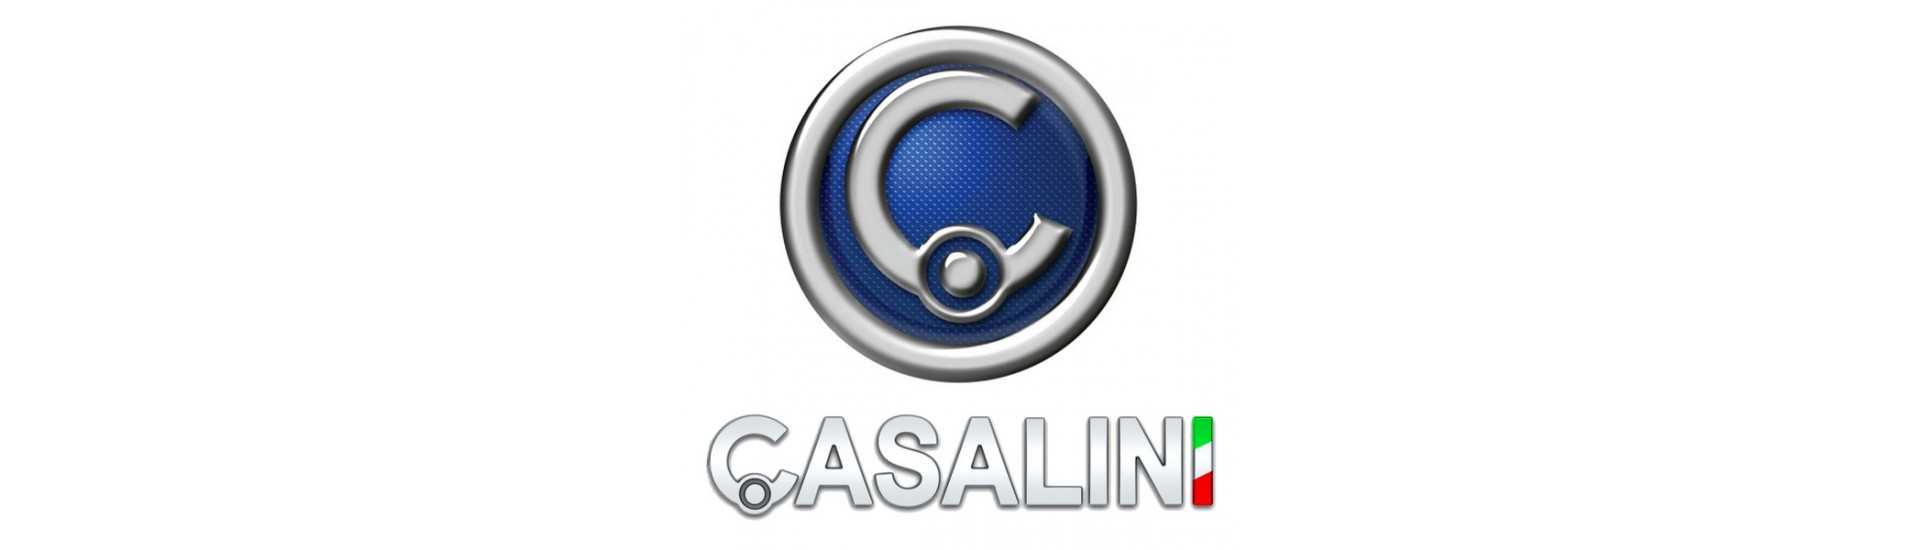 Suspension roller till bästa prisbil utan tillstånd Casalini